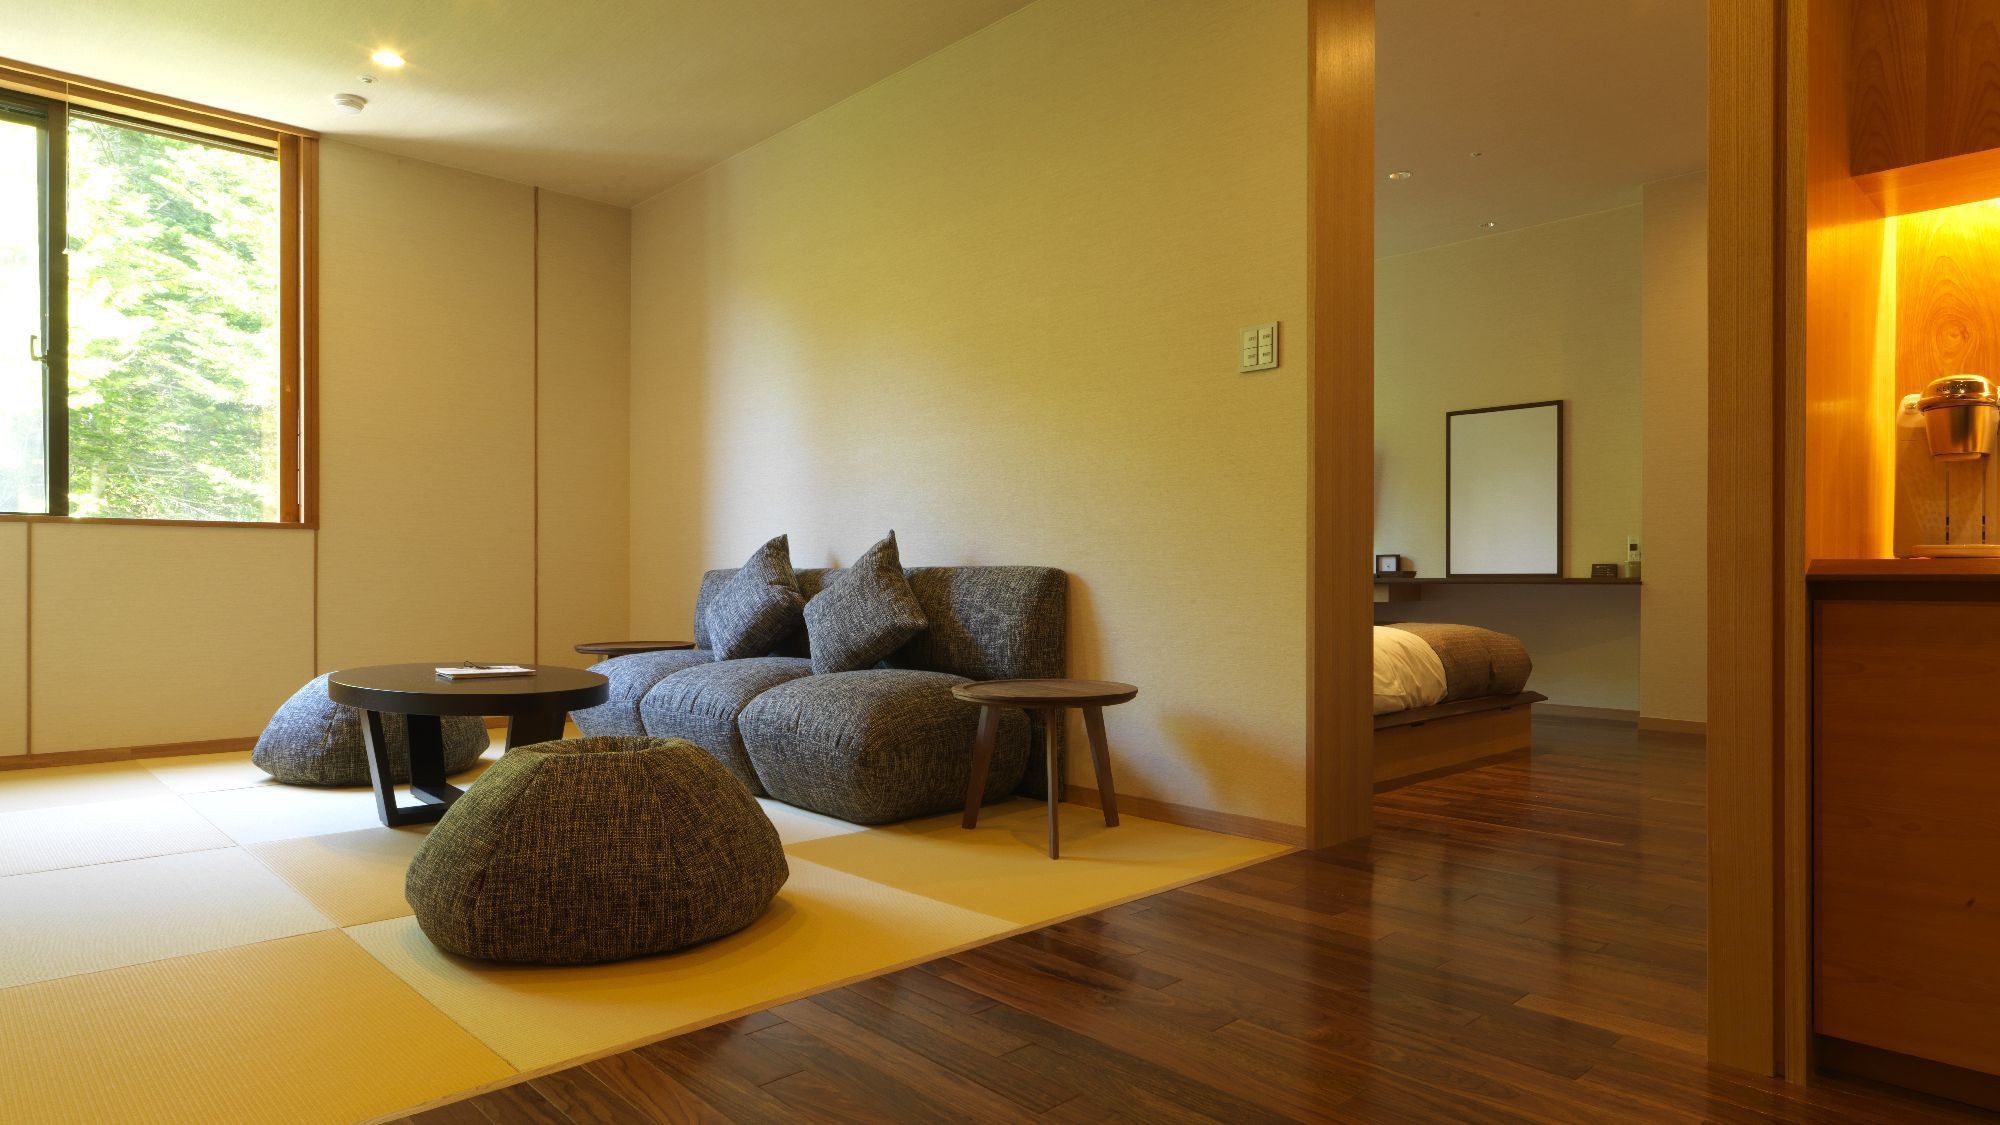 ◆ 日西式房間（客房示例）/ 52m2 日式和西式雙床間+榻榻米空間